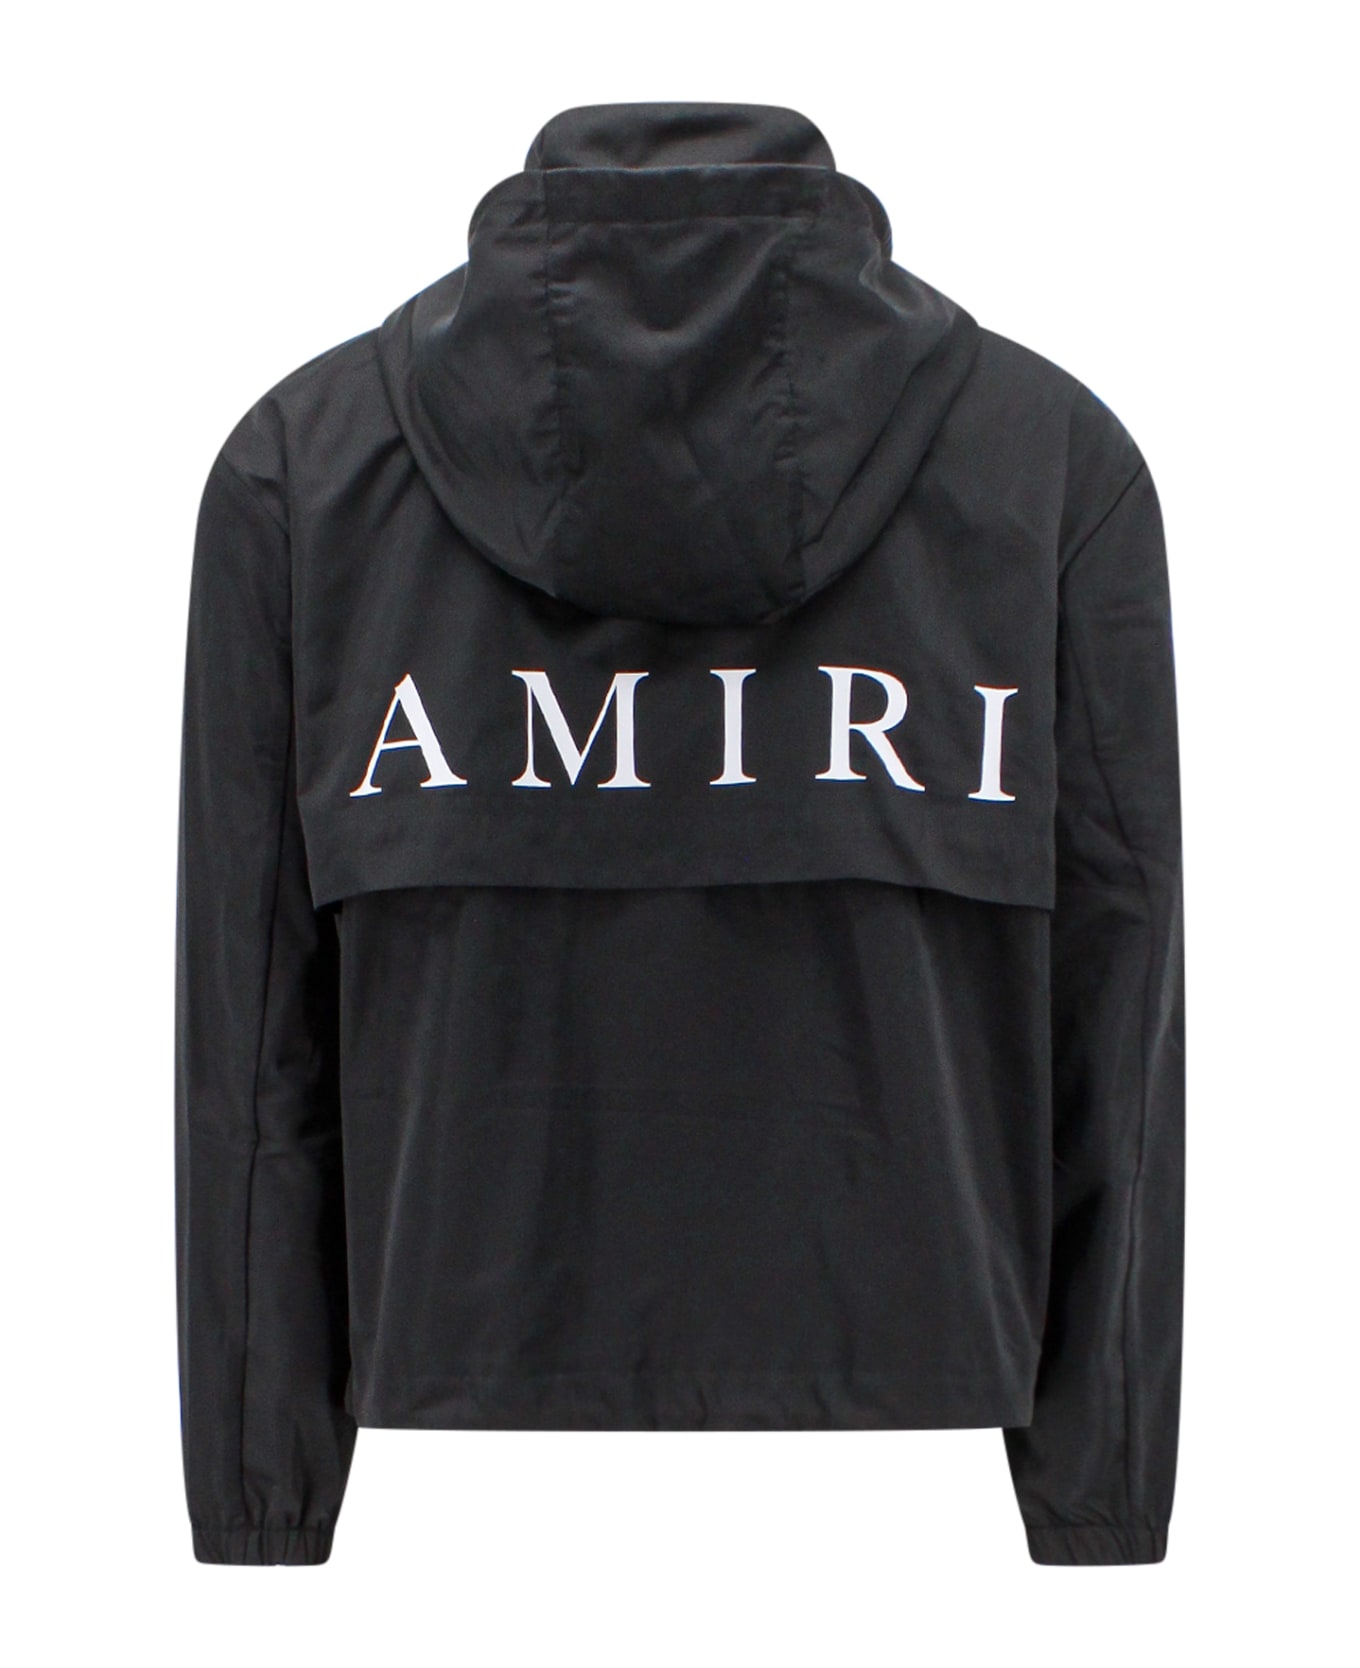 AMIRI Jacket - Black